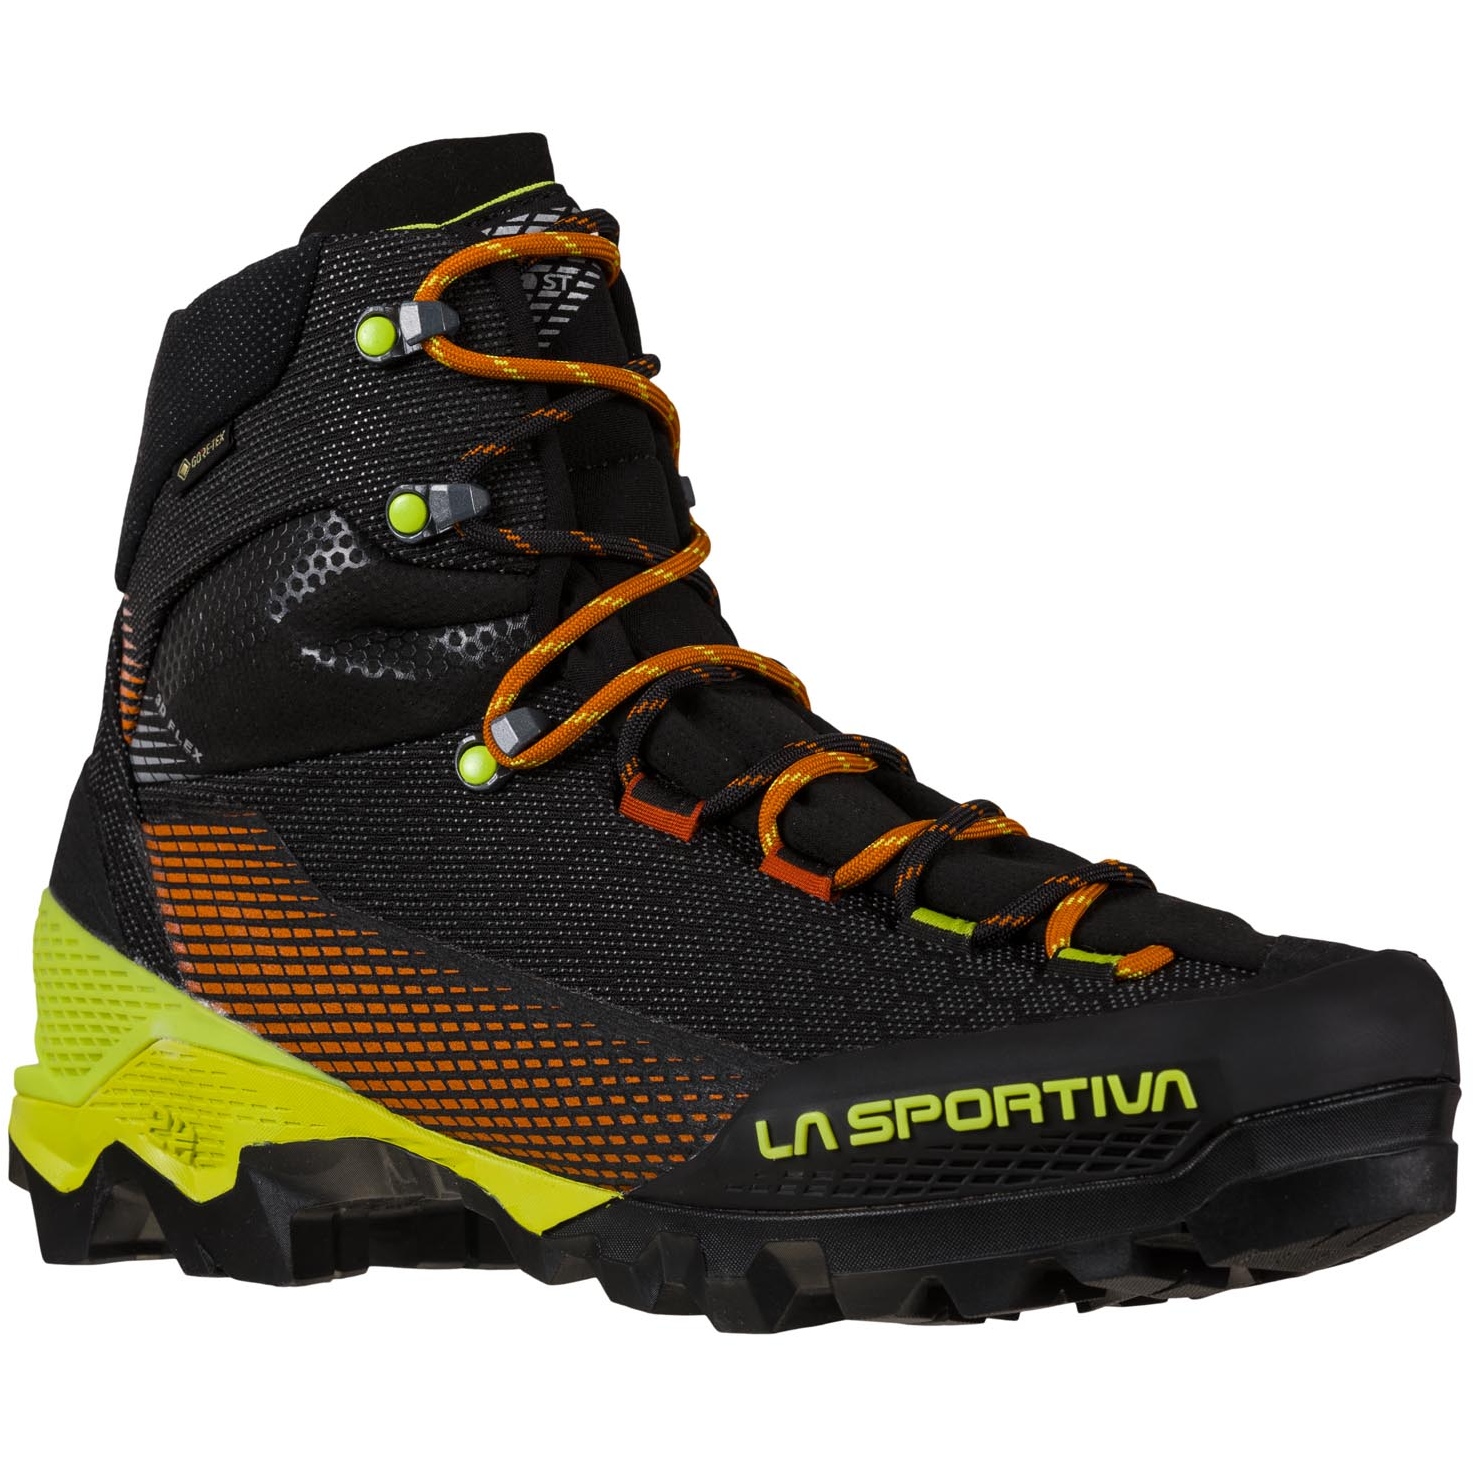 La Sportiva Chaussures de Marche d’Approche Homme - Aequilibrium ST GTX -  Carbon/Lime Punch